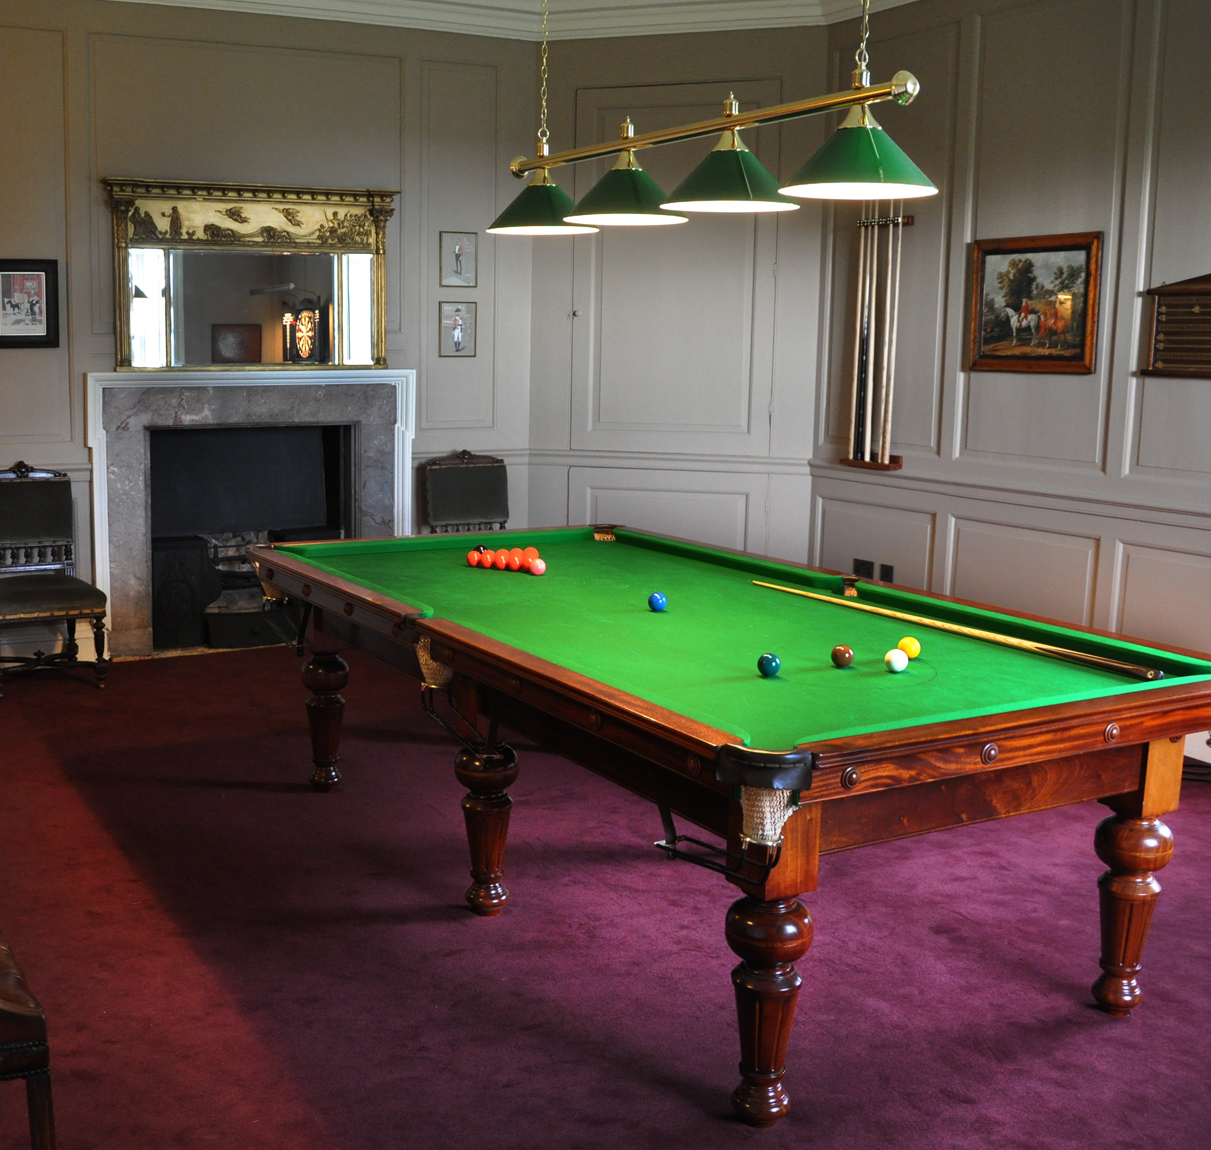 The Billiards Room at Kirtlington Park